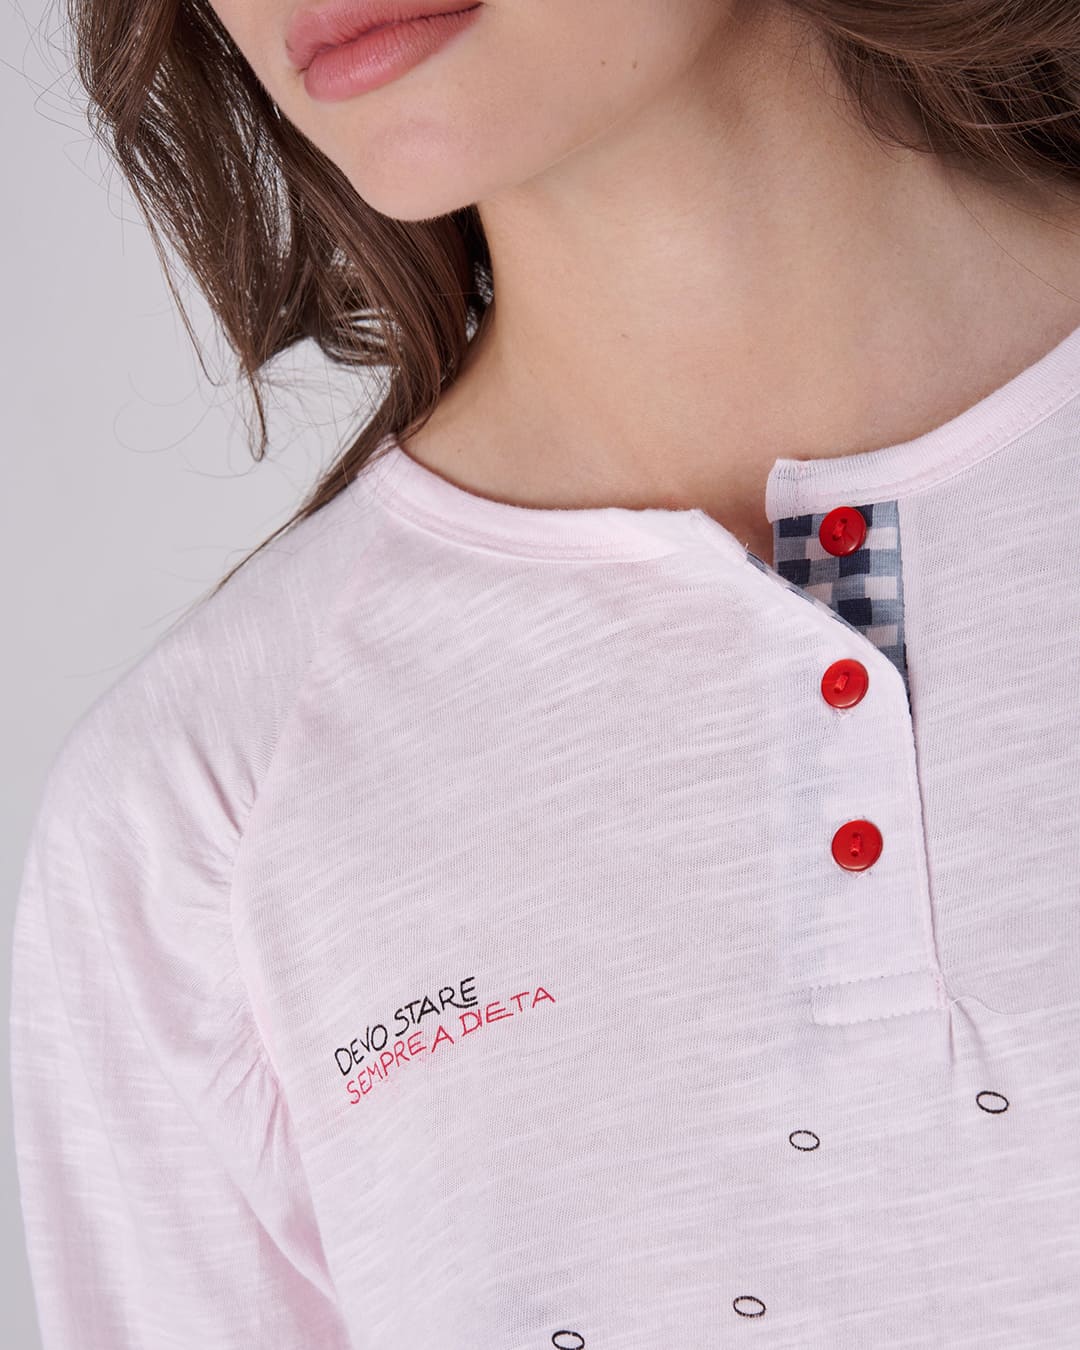 Dettaglio colletto e scritta "devo stare sempre a dieta" sulla maglietta del pigiama lungo da donna "DIETA"